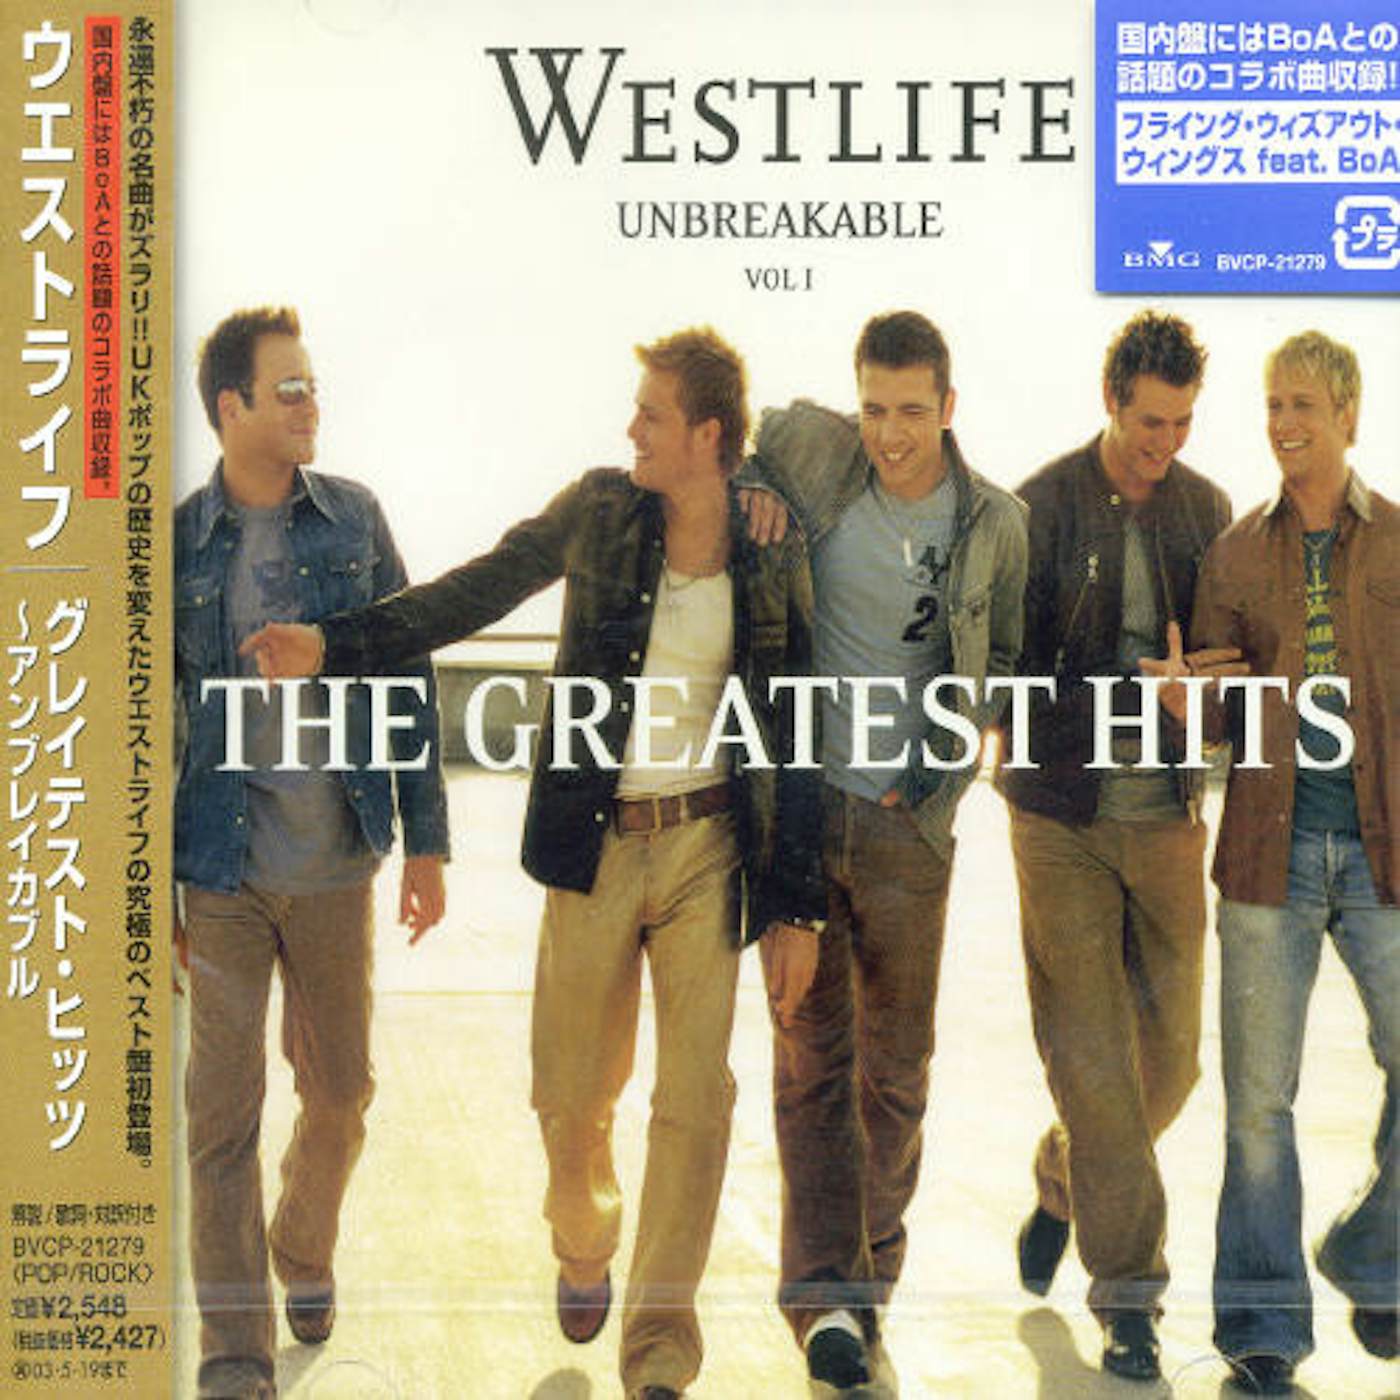 Westlife's 'Spectrum' Tops UK Albums Chart